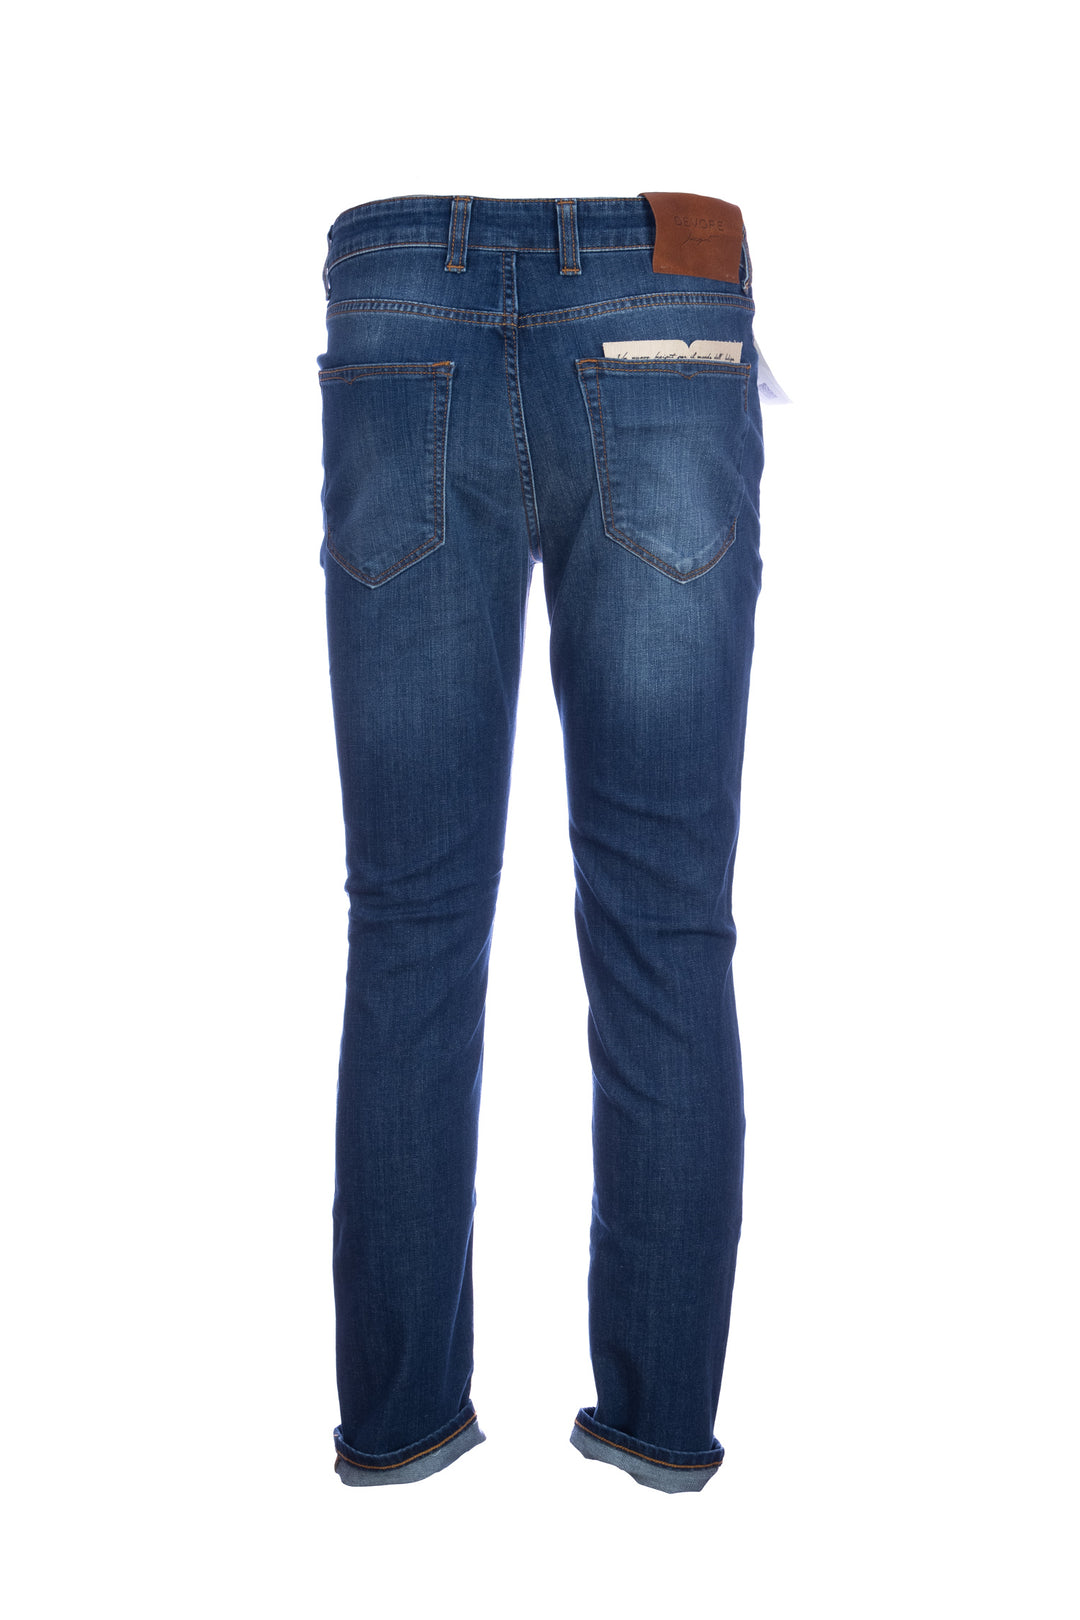 DEVORE Jeans 5 tasche in cotone stretch lavaggio medio - Mancinelli 1954